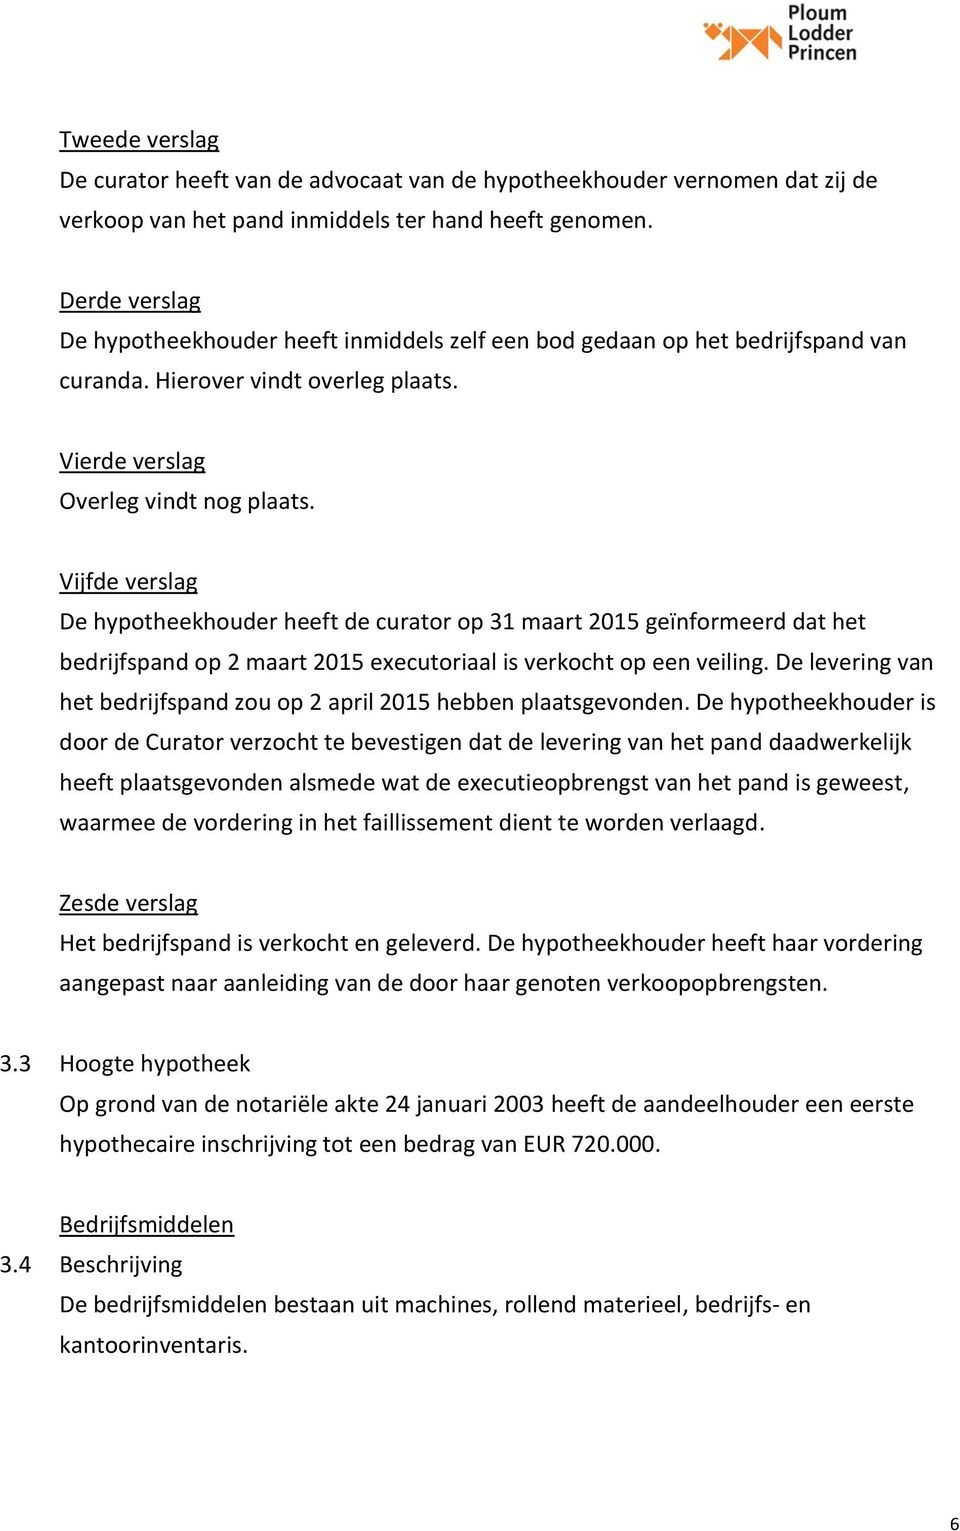 Vijfde verslag De hypotheekhouder heeft de curator op 31 maart 2015 geïnformeerd dat het bedrijfspand op 2 maart 2015 executoriaal is verkocht op een veiling.